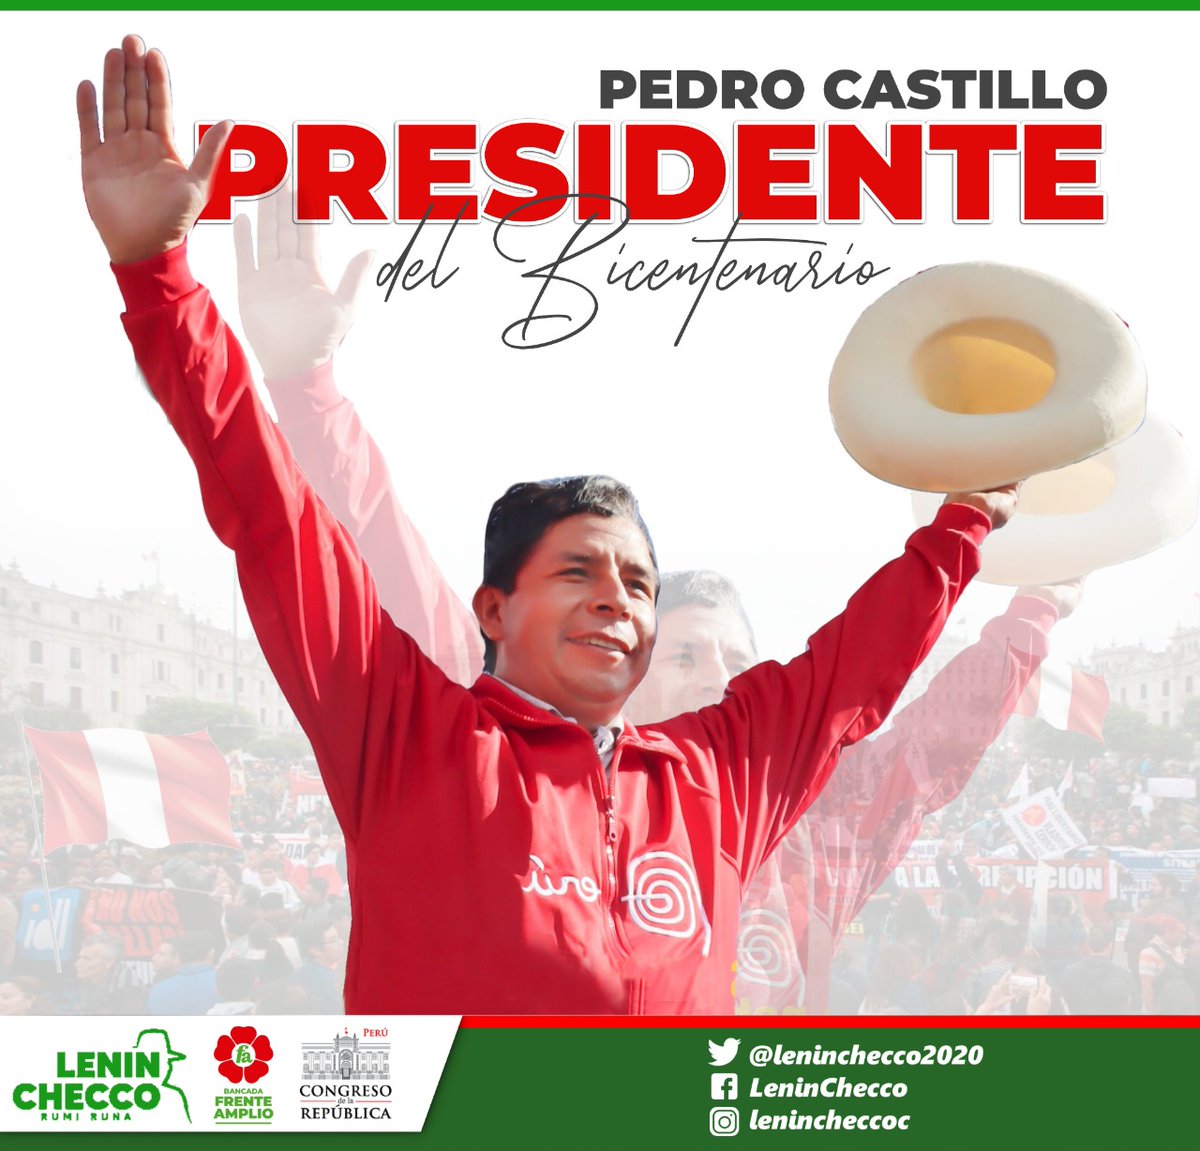 Saludo al Presidente del Perú, un ciudadano de a pié como la mayoría de nosotros. ¡¡¡VIVA EL PERÚ!!!